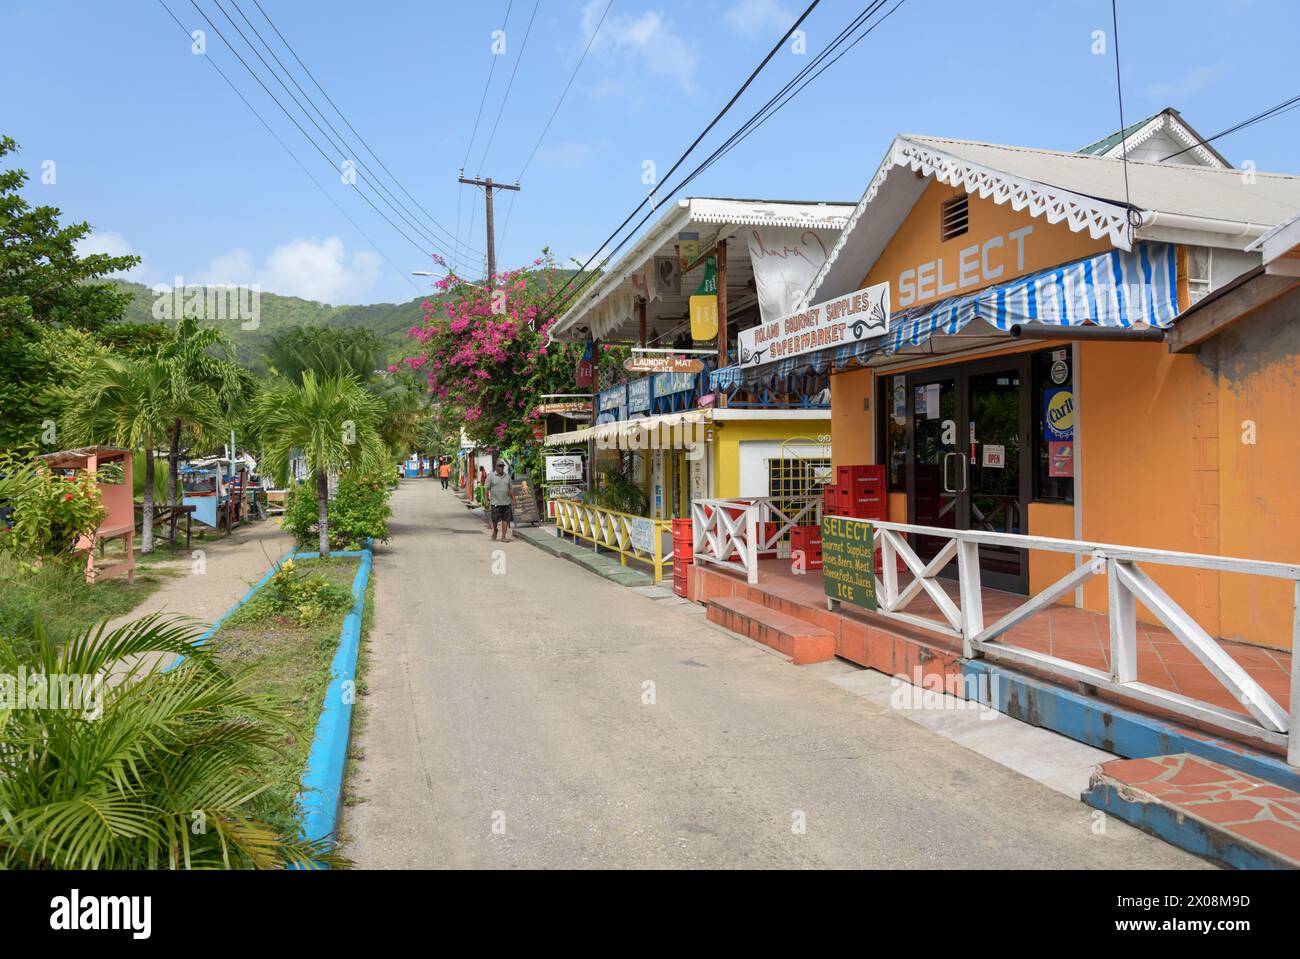 Negozi e ristoranti colorati, Port Elizabeth, Bequia Island, St Vincent e Grenadine, Caraibi Foto Stock